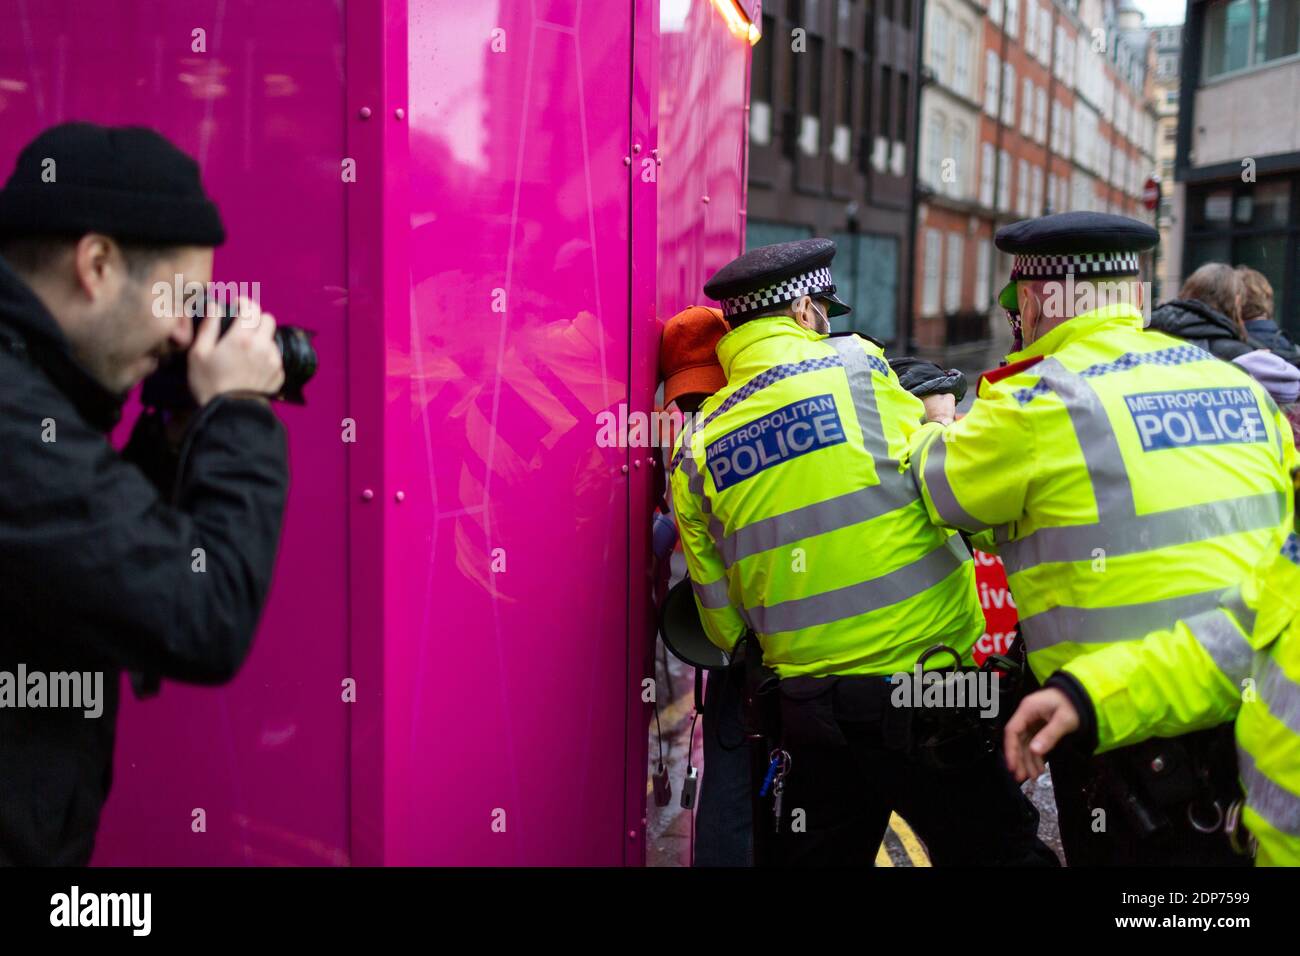 Un fotógrafo captura un arresto durante la protesta contra la vacuna COVID-19, Westminster, Londres, 14 de diciembre de 2020 Foto de stock